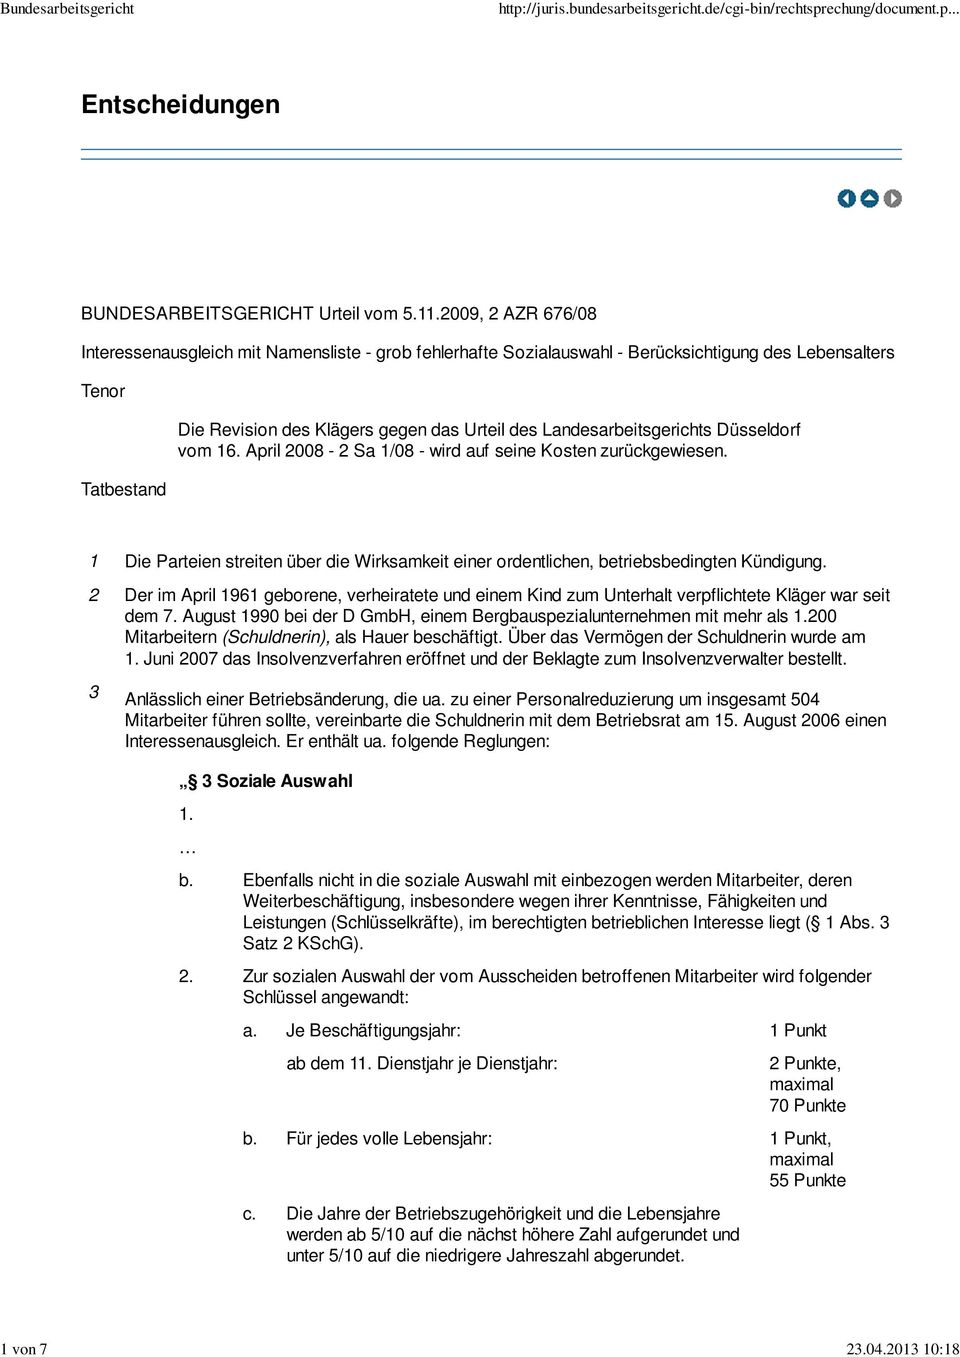 Landesarbeitsgerichts Düsseldorf vom 16. April 2008-2 Sa 1/08 - wird auf seine Kosten zurückgewiesen. 1 Die Parteien streiten über die Wirksamkeit einer ordentlichen, betriebsbedingten Kündigung.